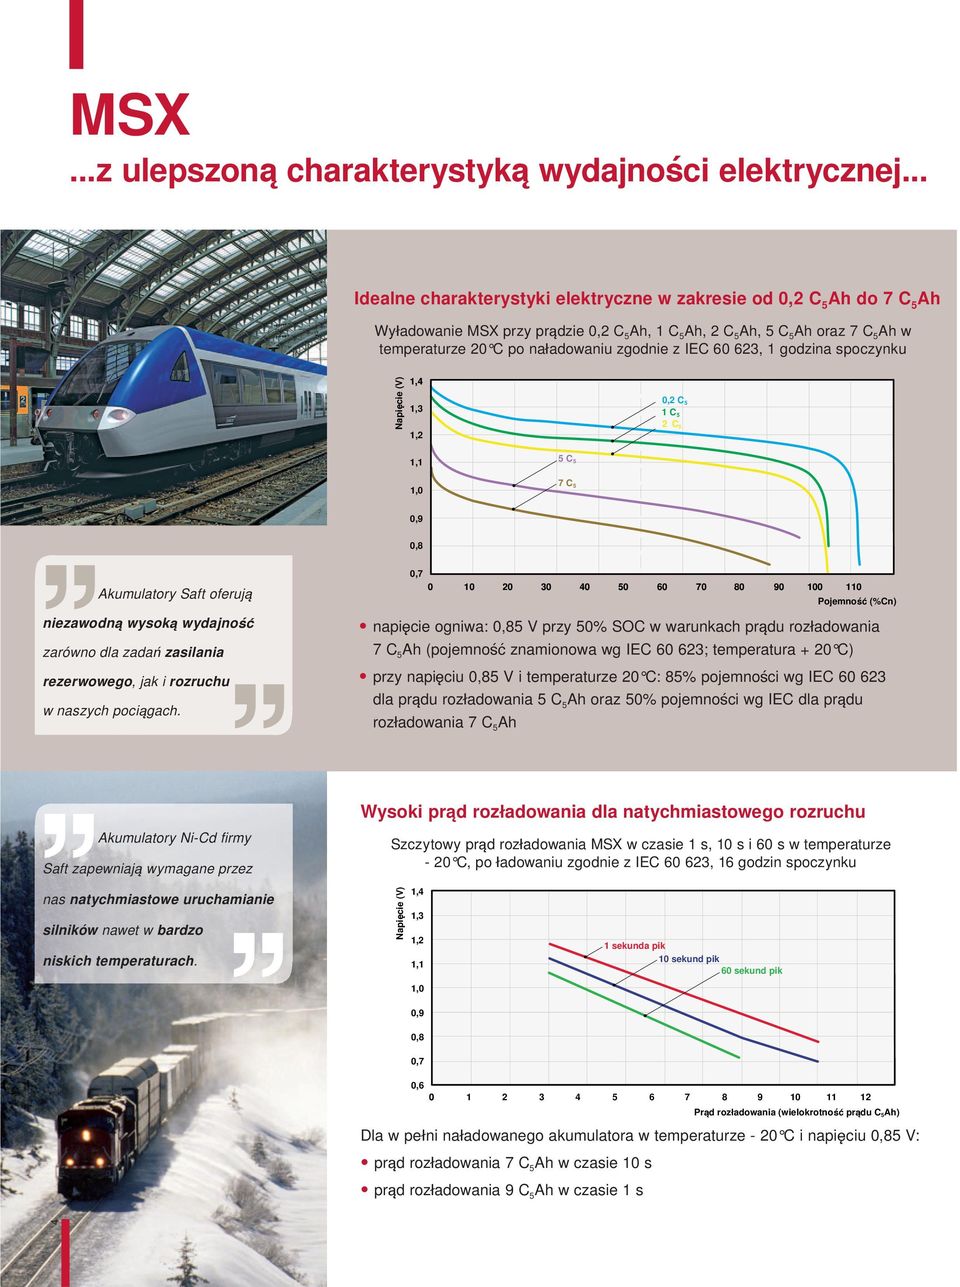 Napięcie (V) 1, 1, 1,2 0,2 C 1 C 2 C 1,1 C Akumulatory Saft oferują niezawodną wysoką wydajność zarówno dla zadań zasilania rezerwowego, jak i rozruchu w naszych pociągach.